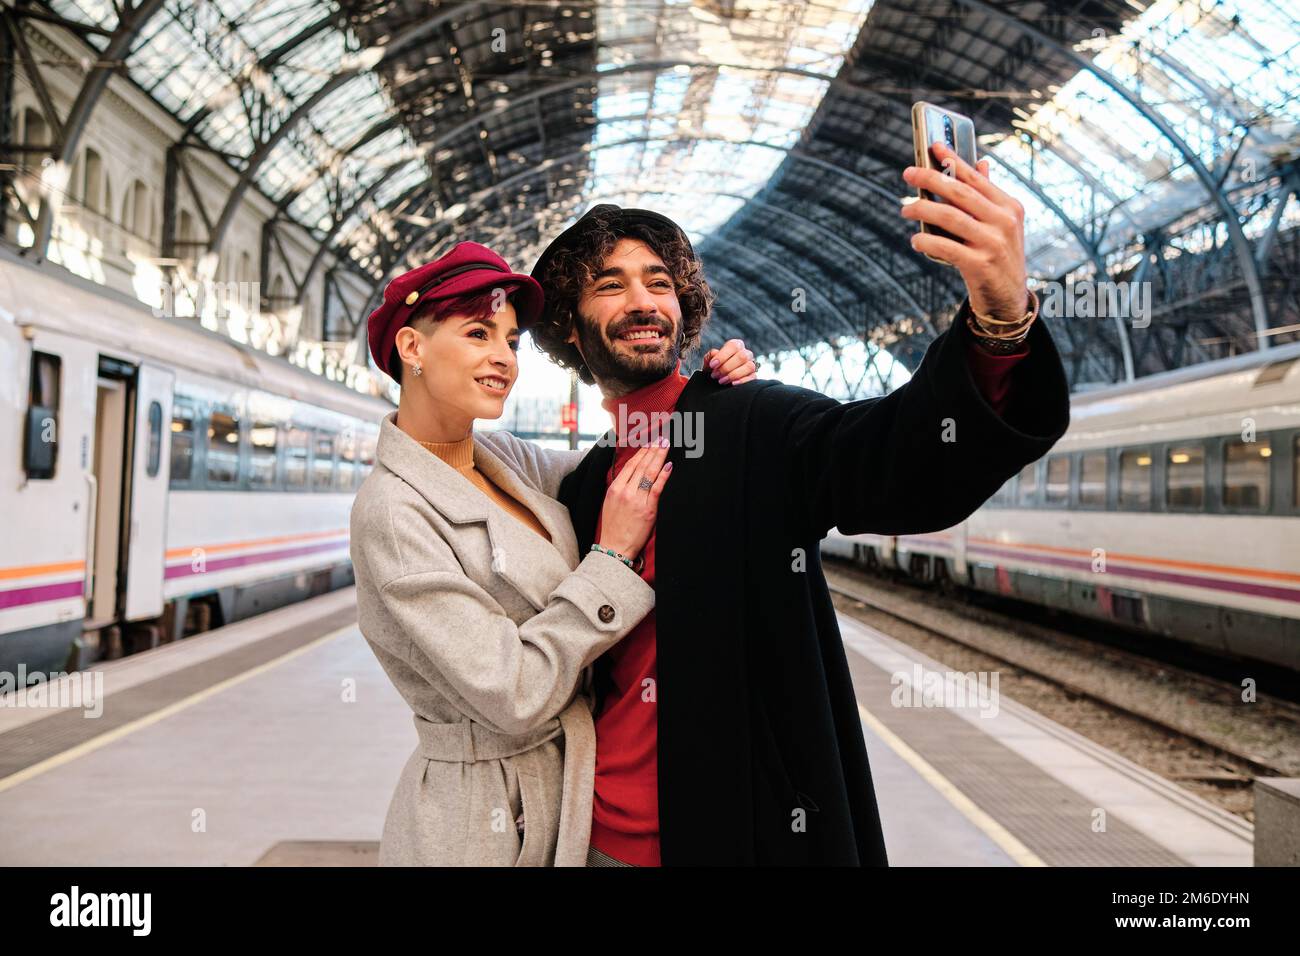 Ein stilvolles Paar, das ein Selfie am Bahnhof macht Stockfoto